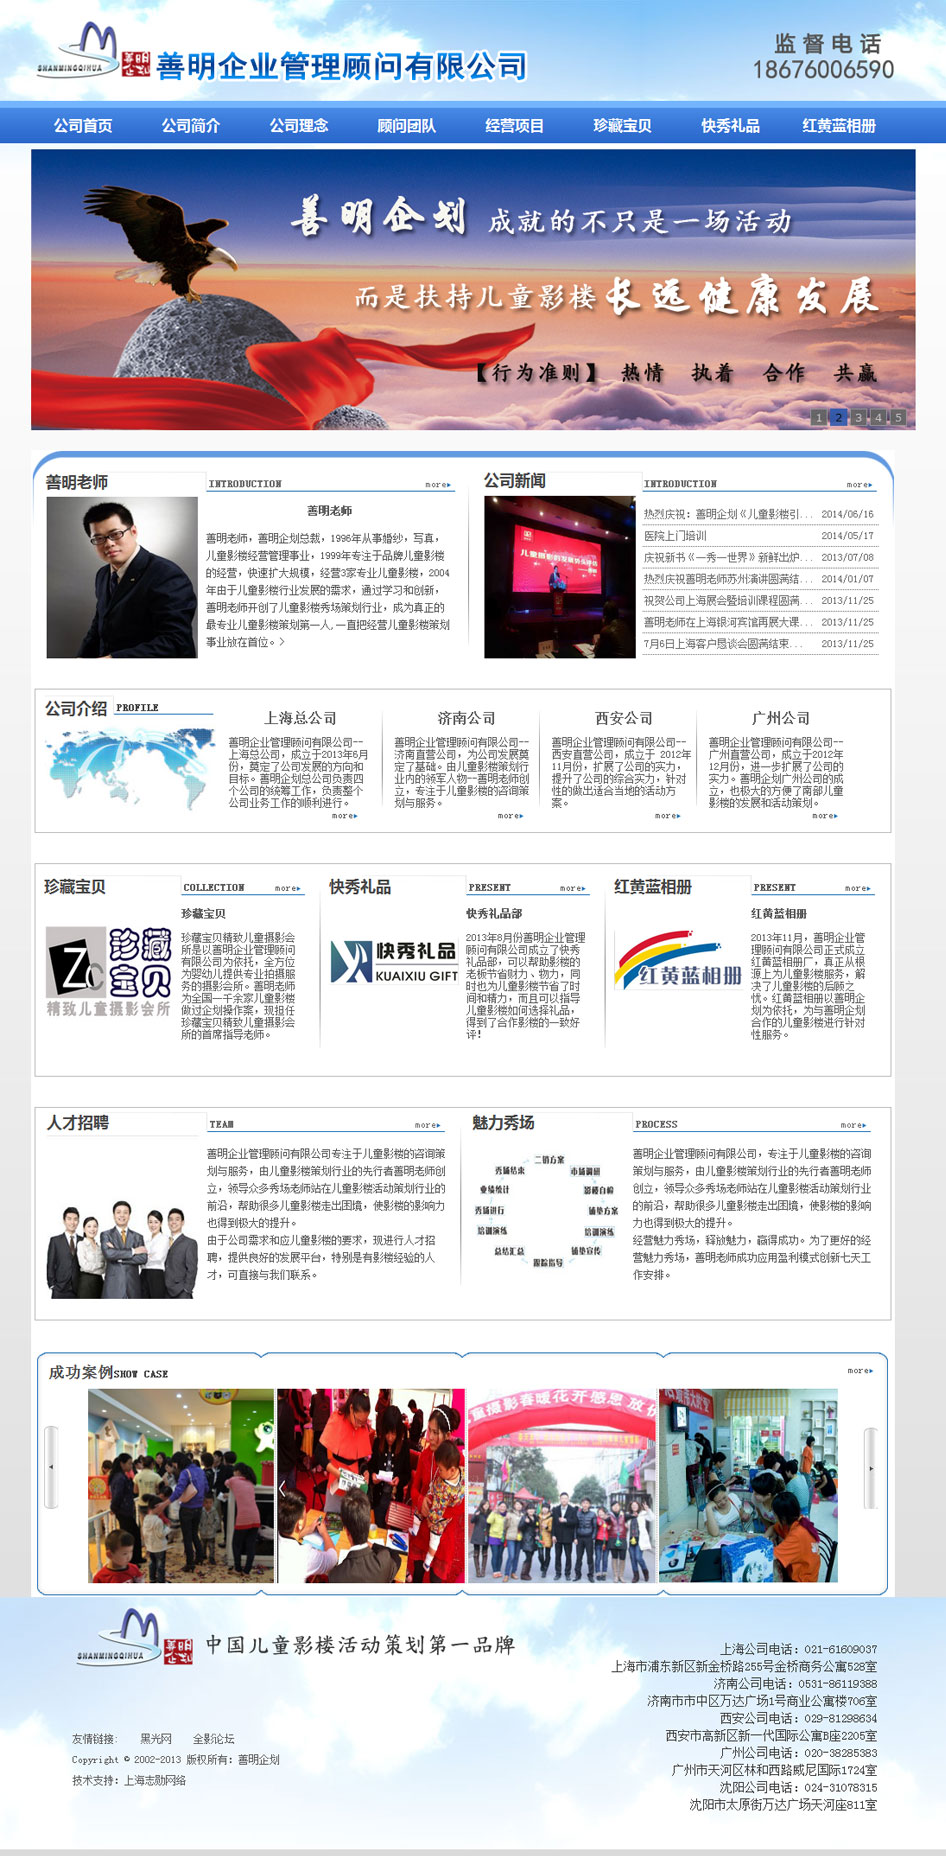 善明企业管理顾问有限公司签约上海网站制作项目